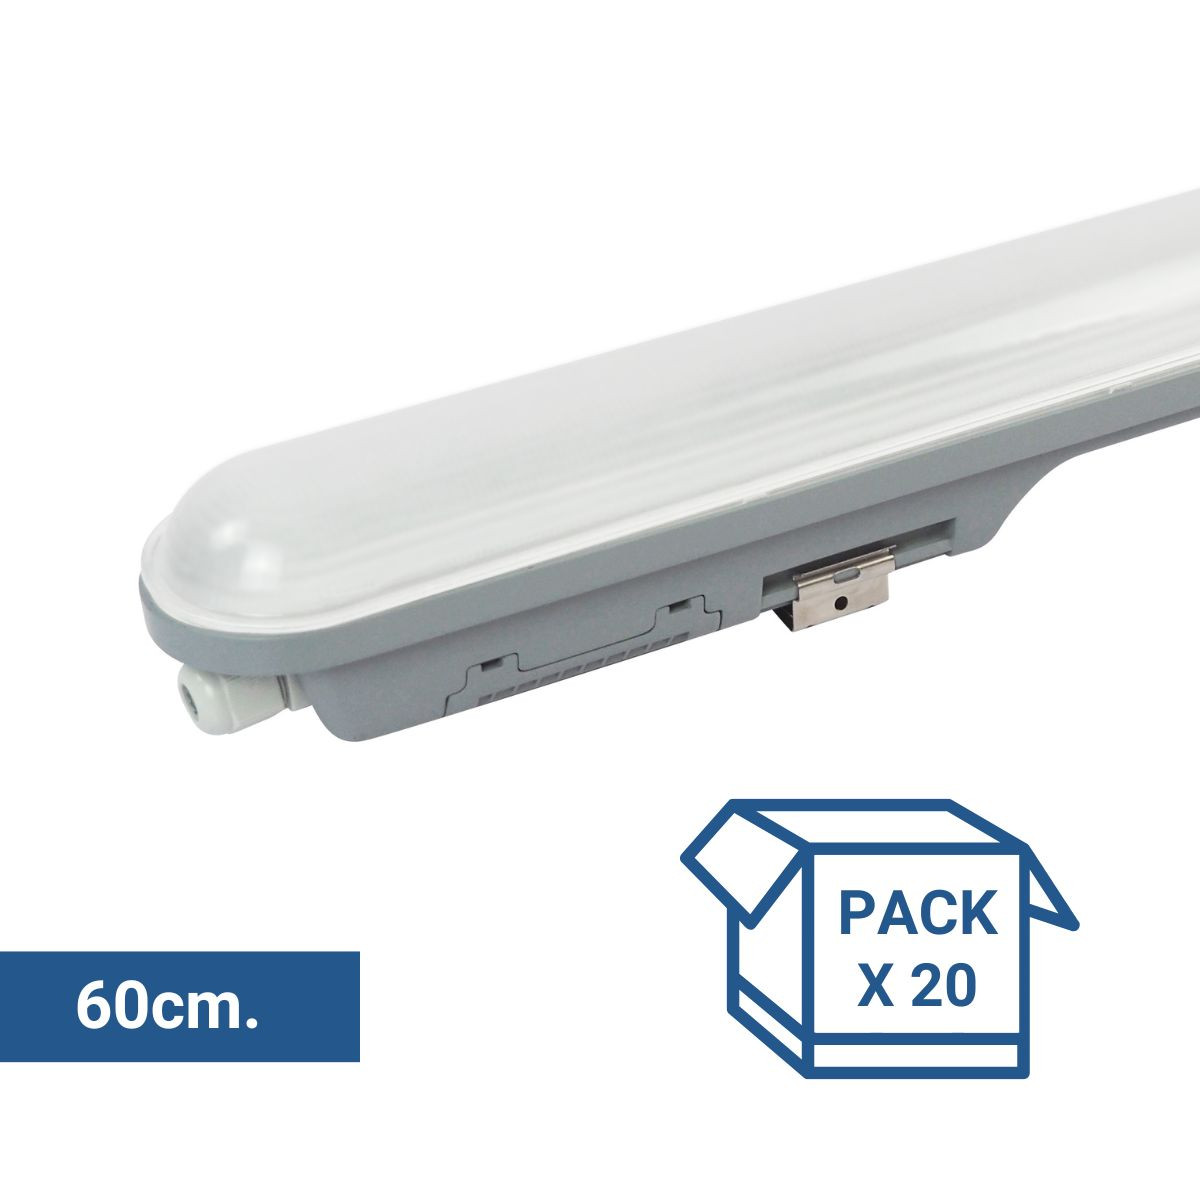 Pack x 20 - Escudo de ligação LED linear à prova de água 9W - 60cm - IP65 - 4000K